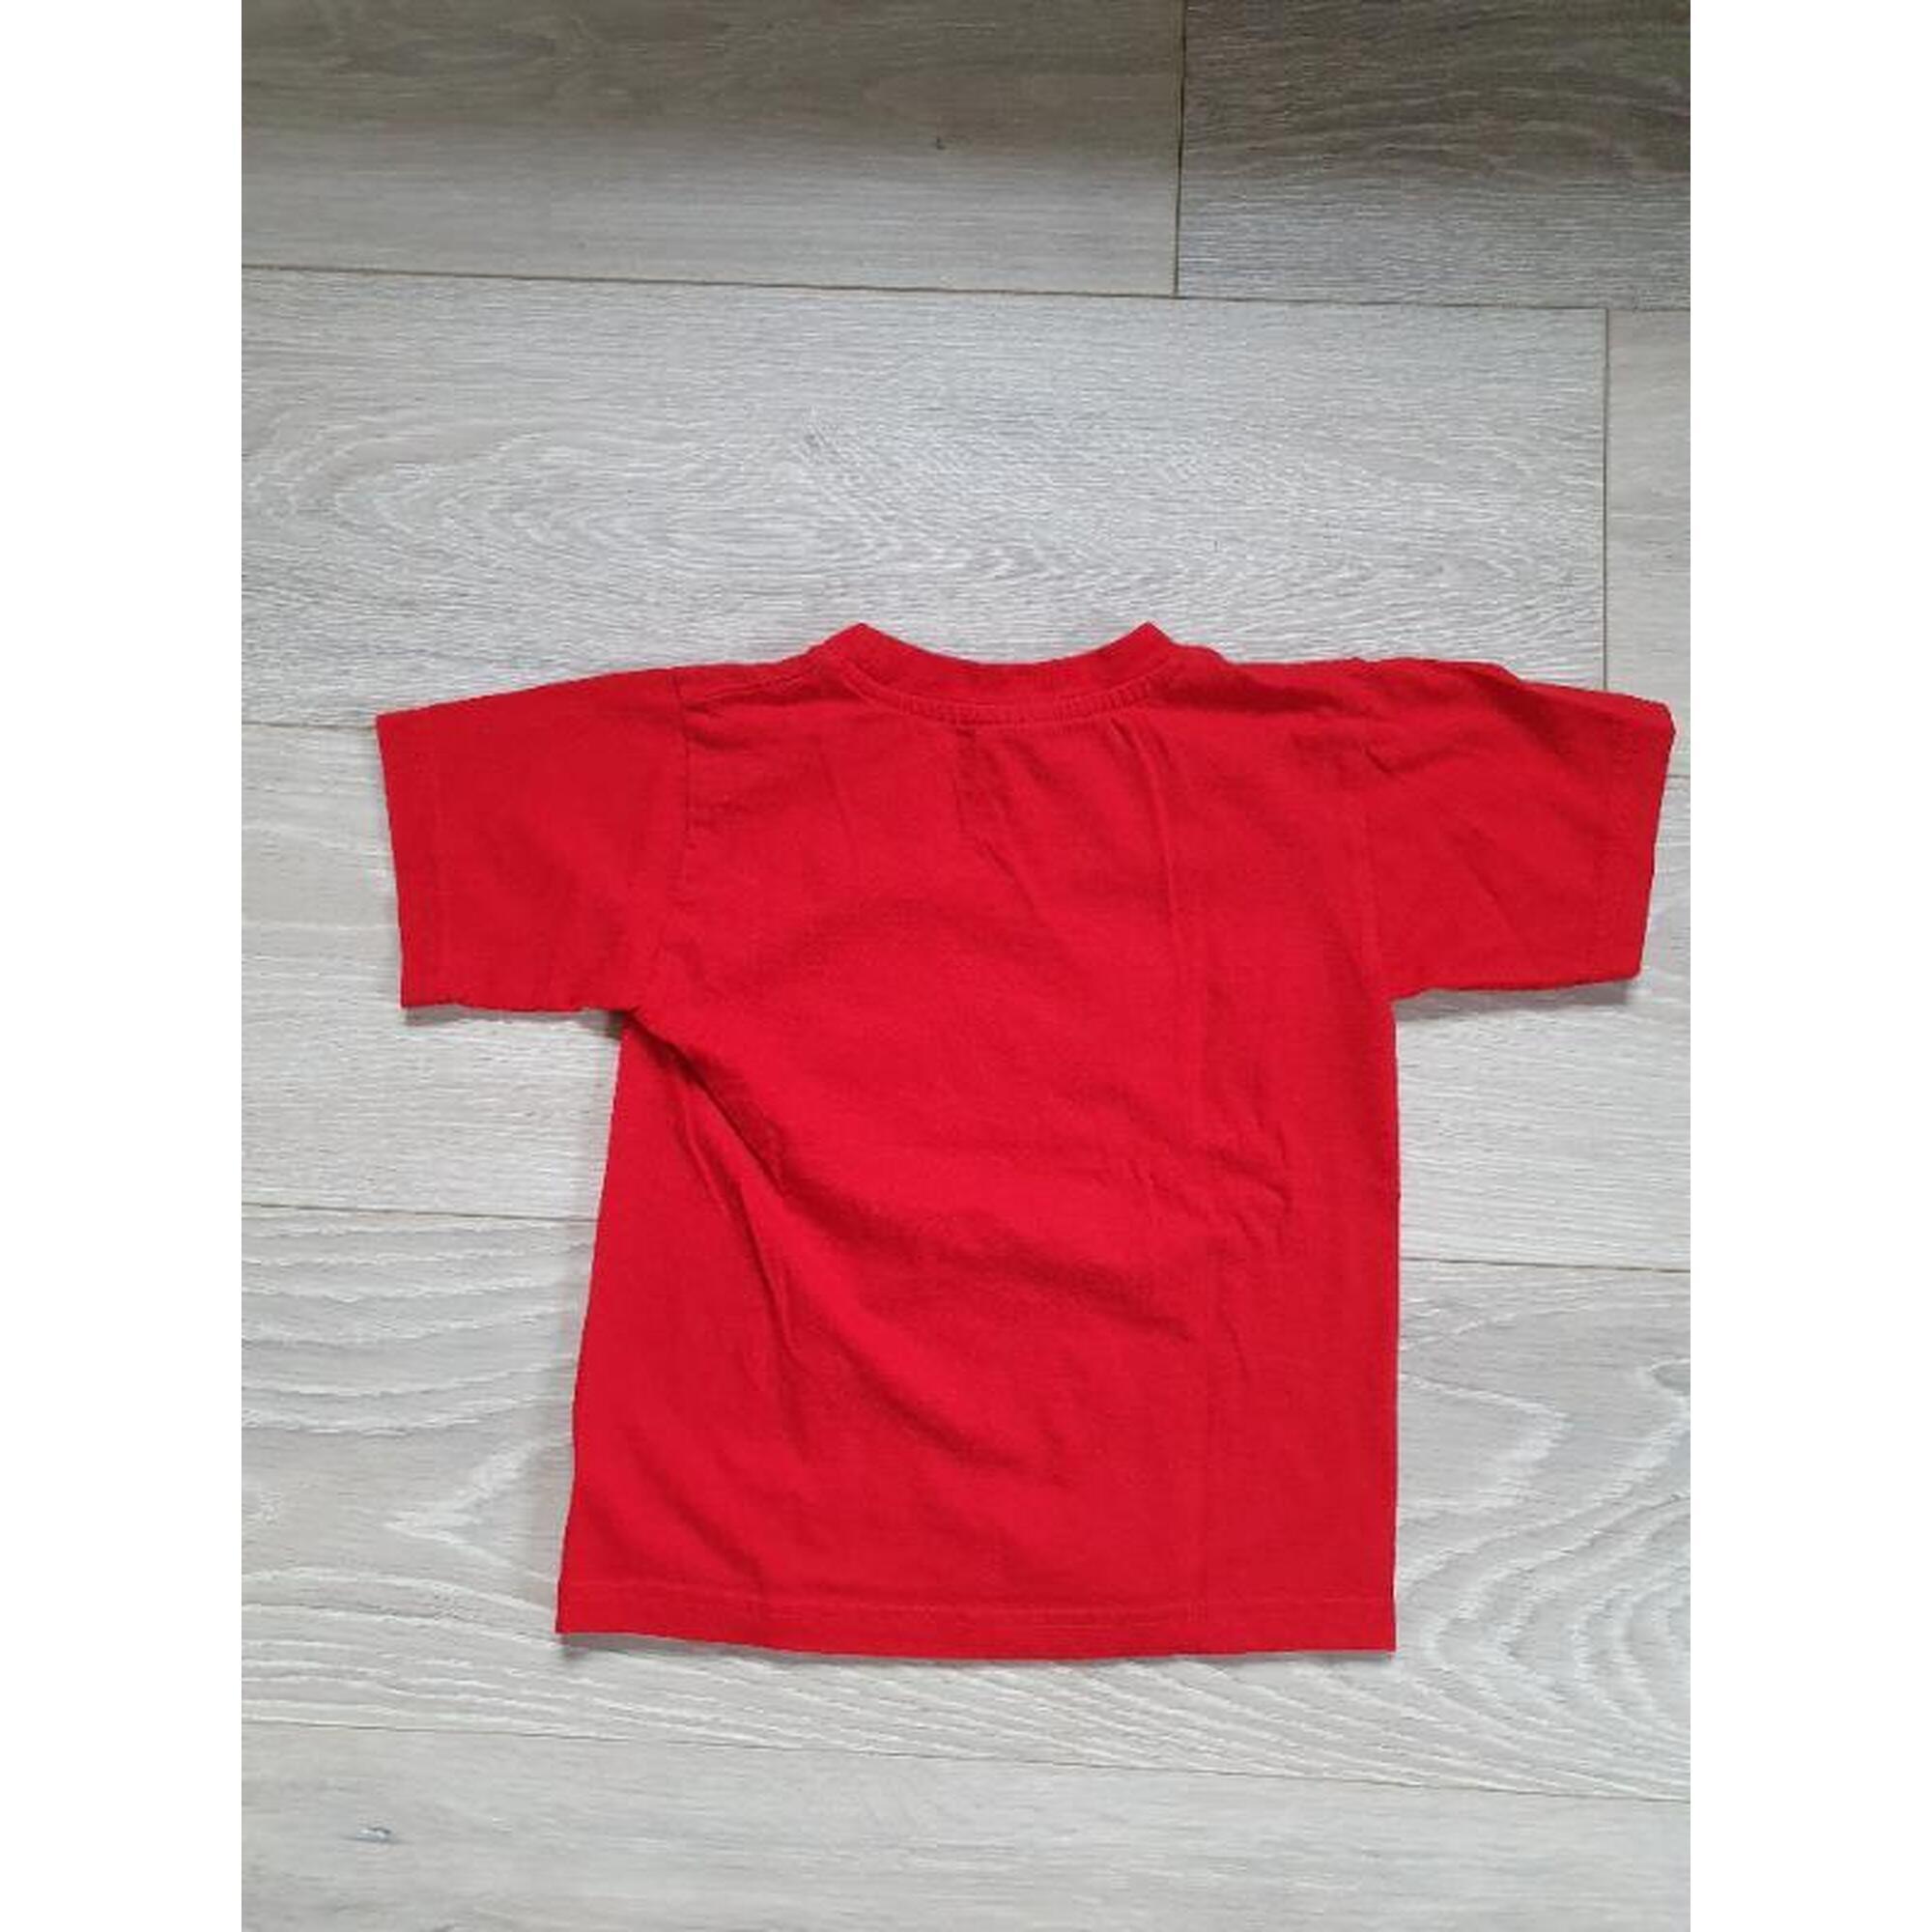 C2C - Rode t-shirt maat 3-4 jaar